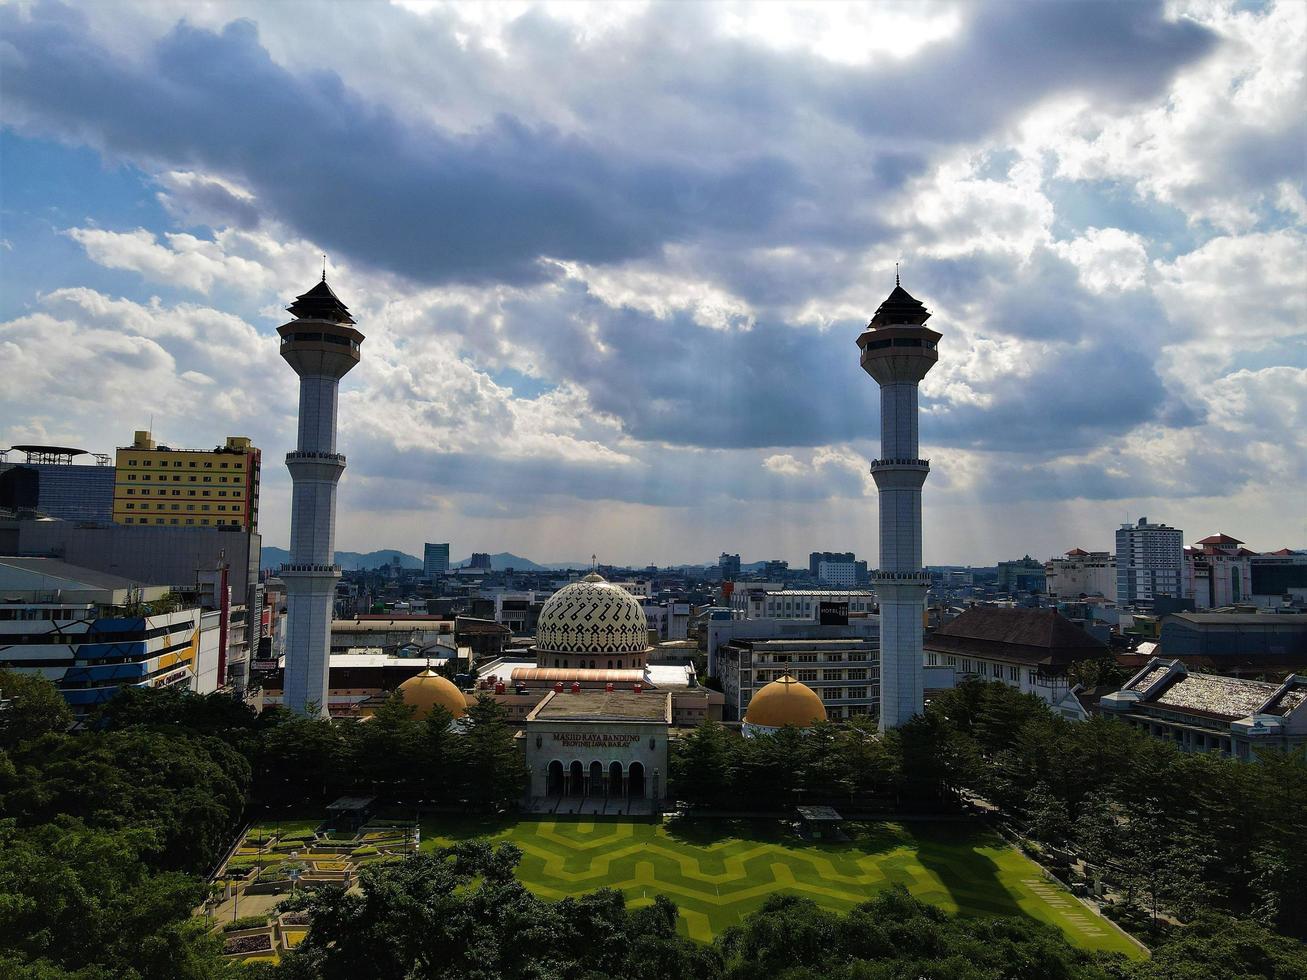 bandung, indonesien, 6. mai 2022 - schöne luftaufnahme, große moschee der stadt bandung. foto